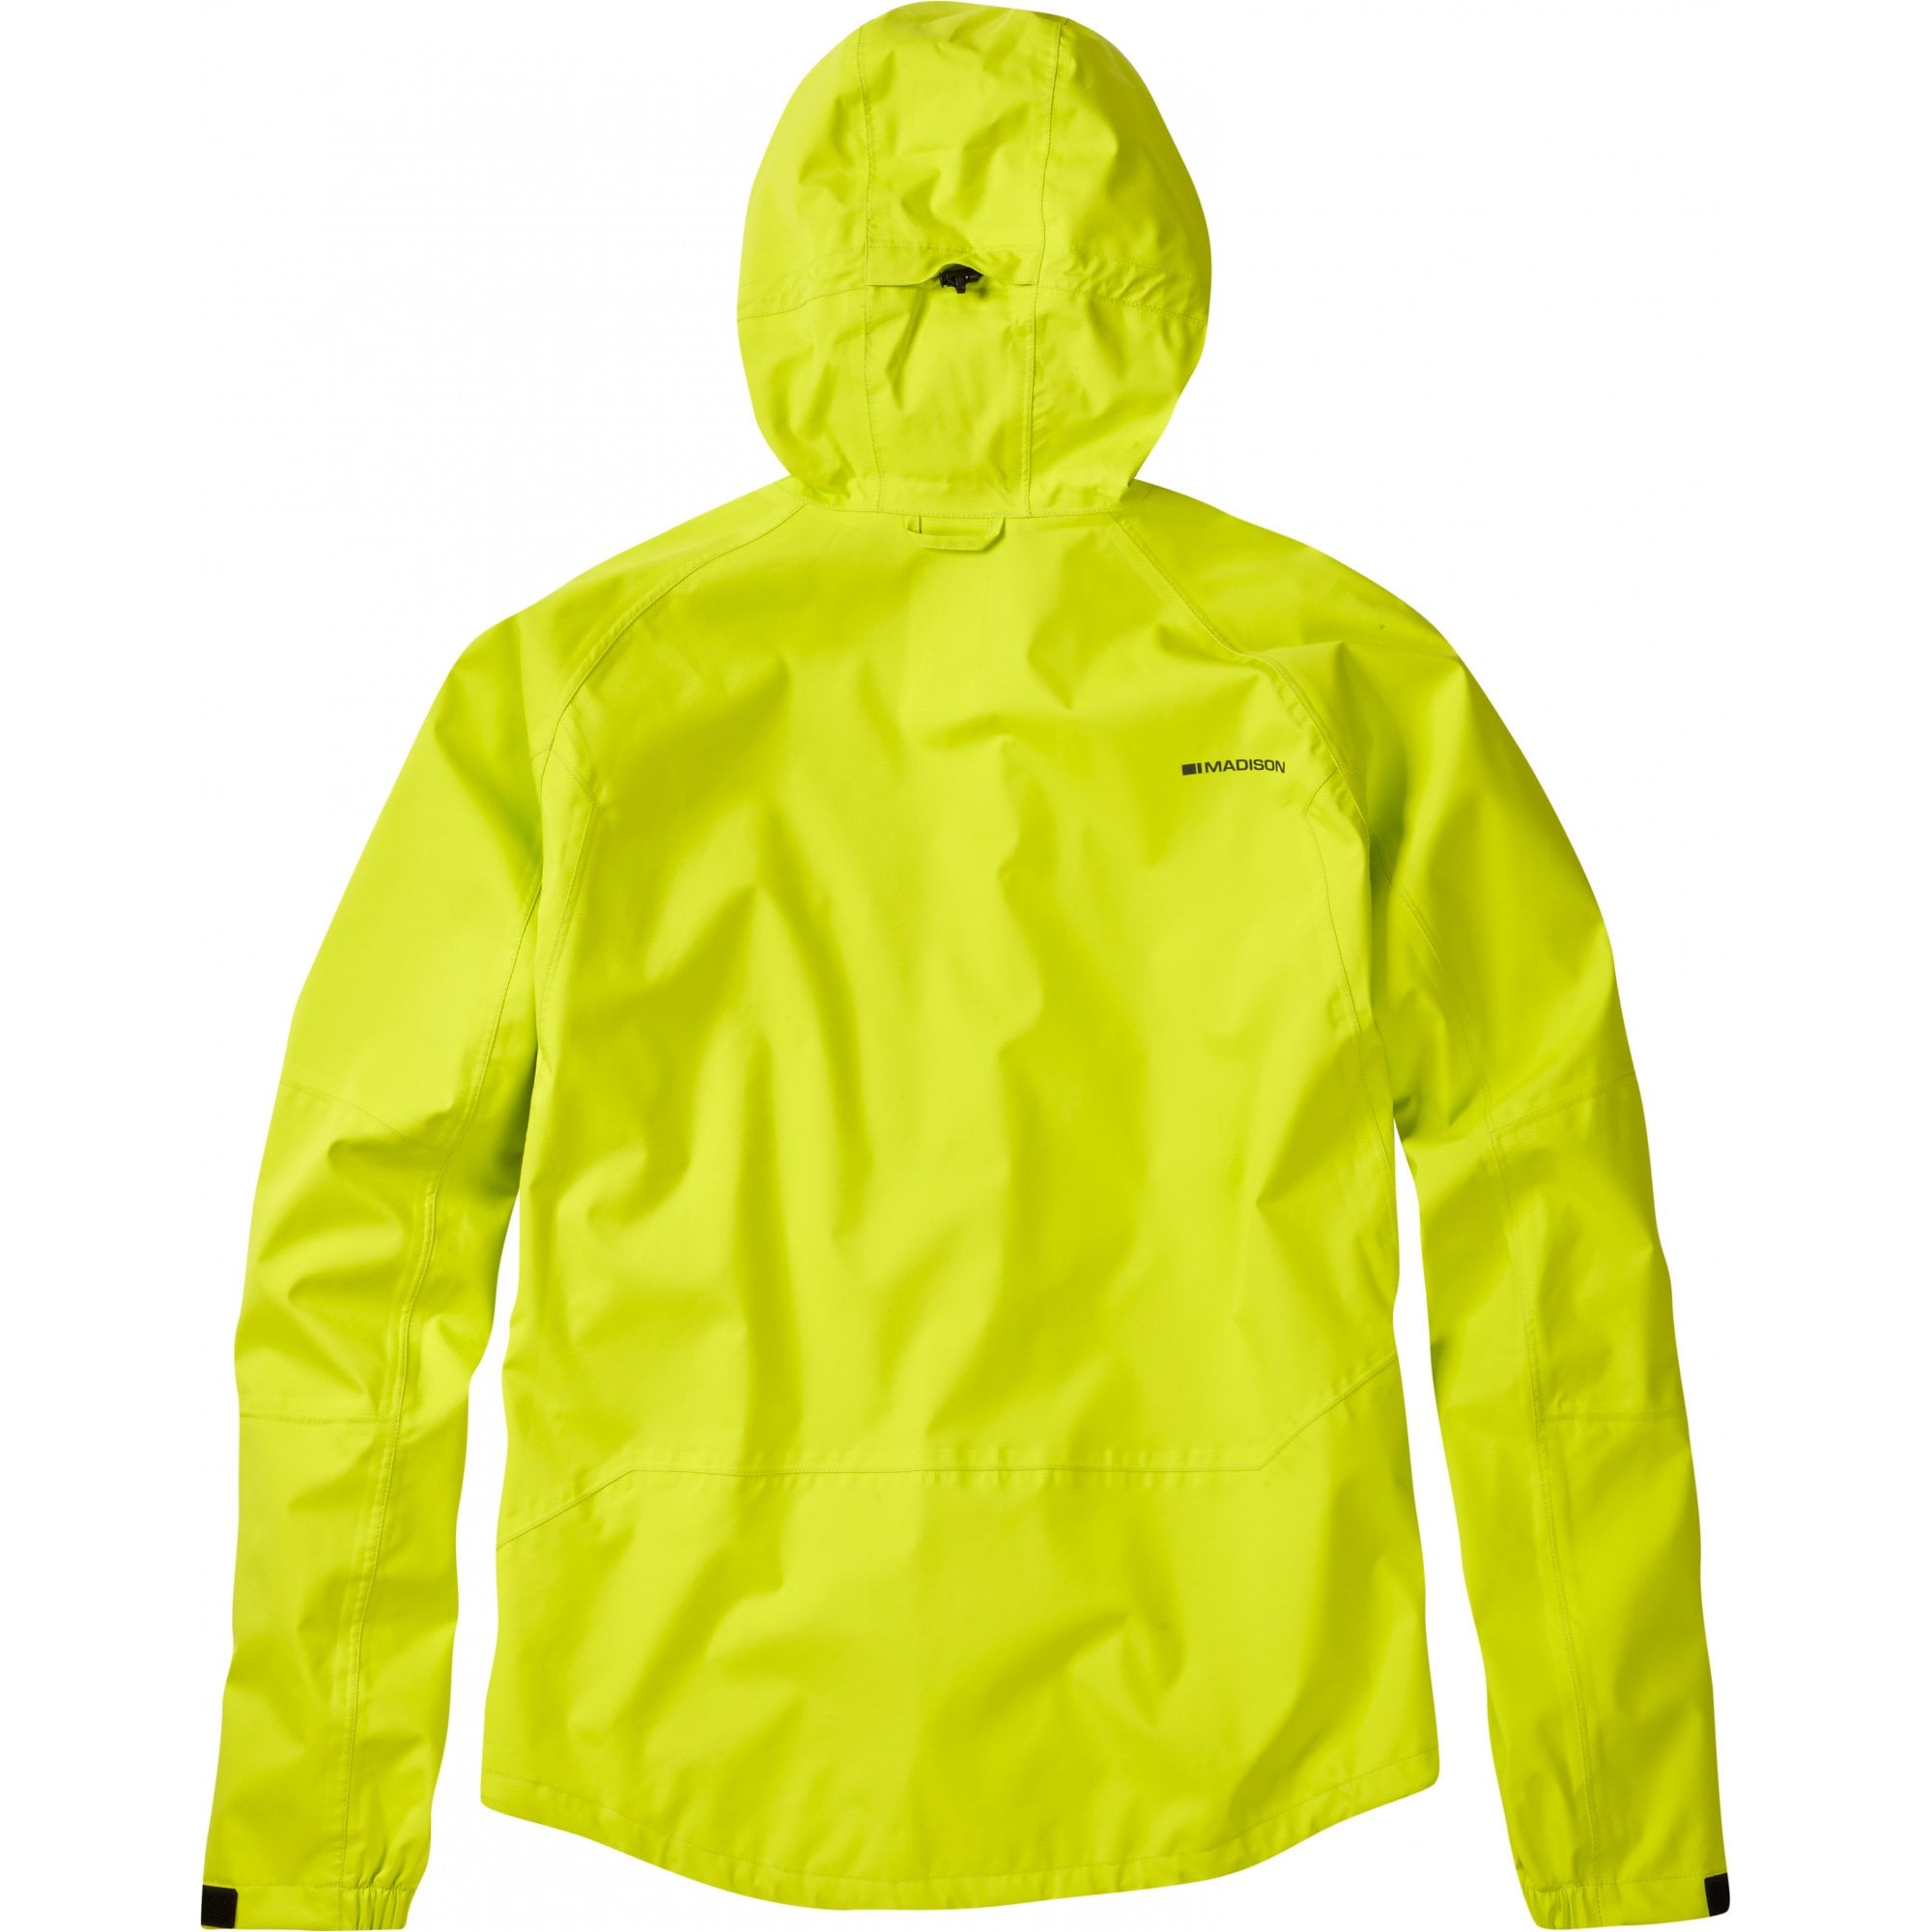 Madison Zenith Men's Waterproof Jacket